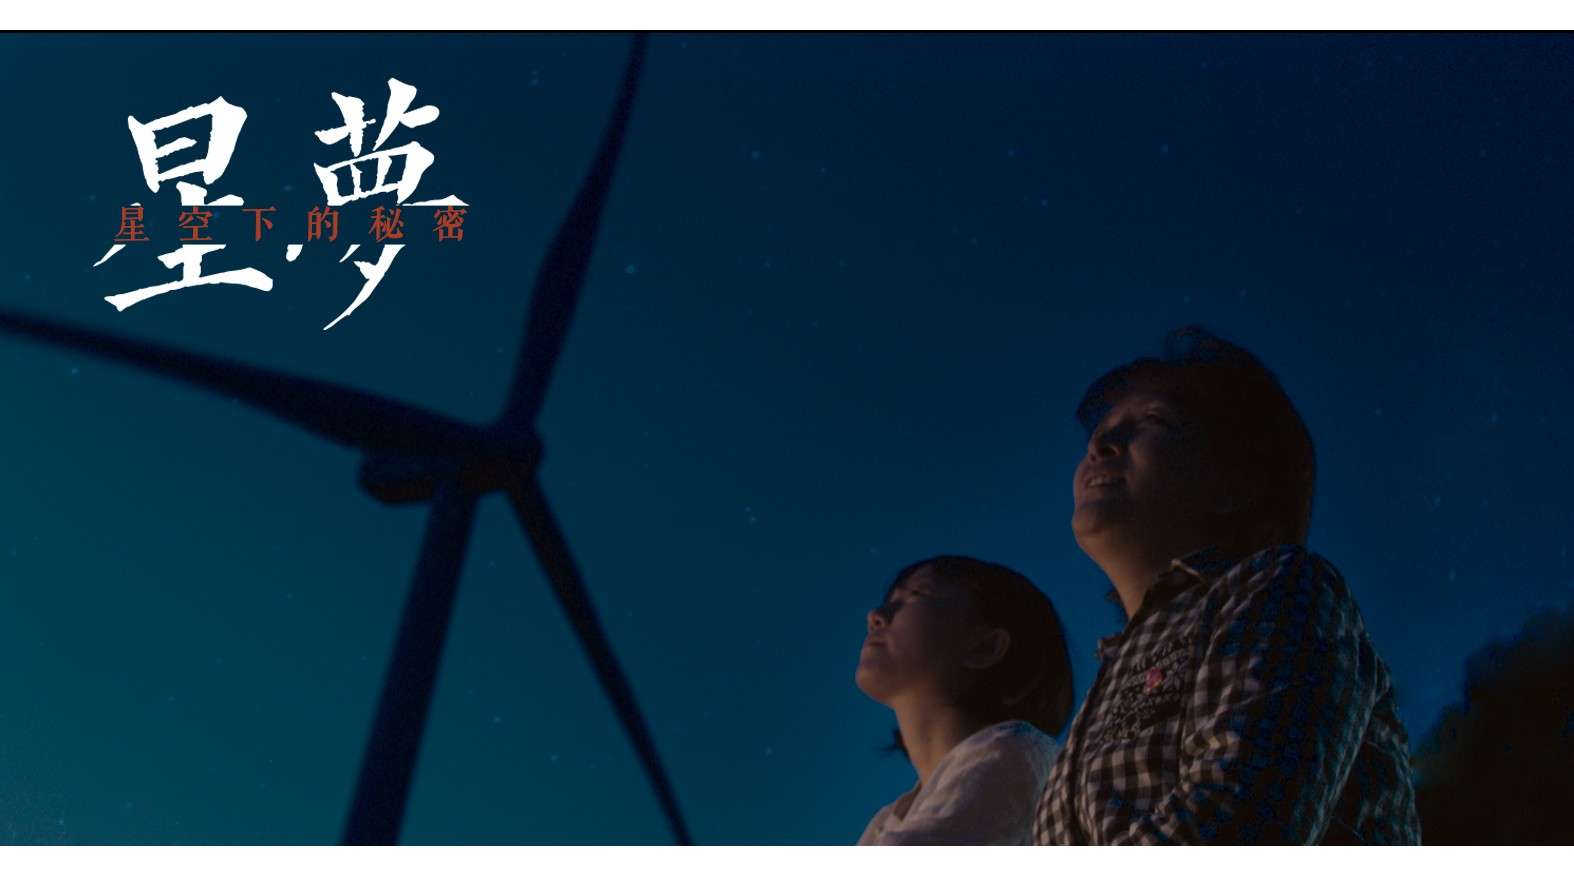 第26届北京大学生电影节获奖短片《星梦》